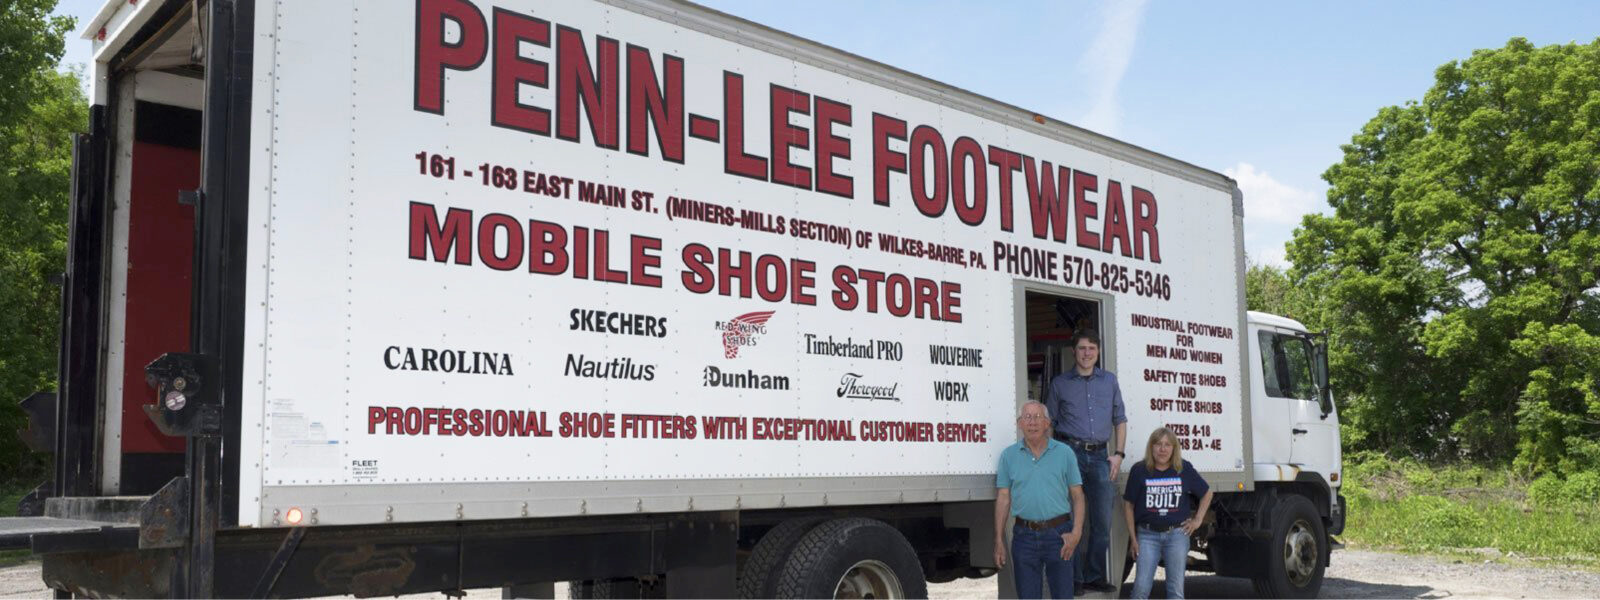 Penn-Lee Shoe Truck